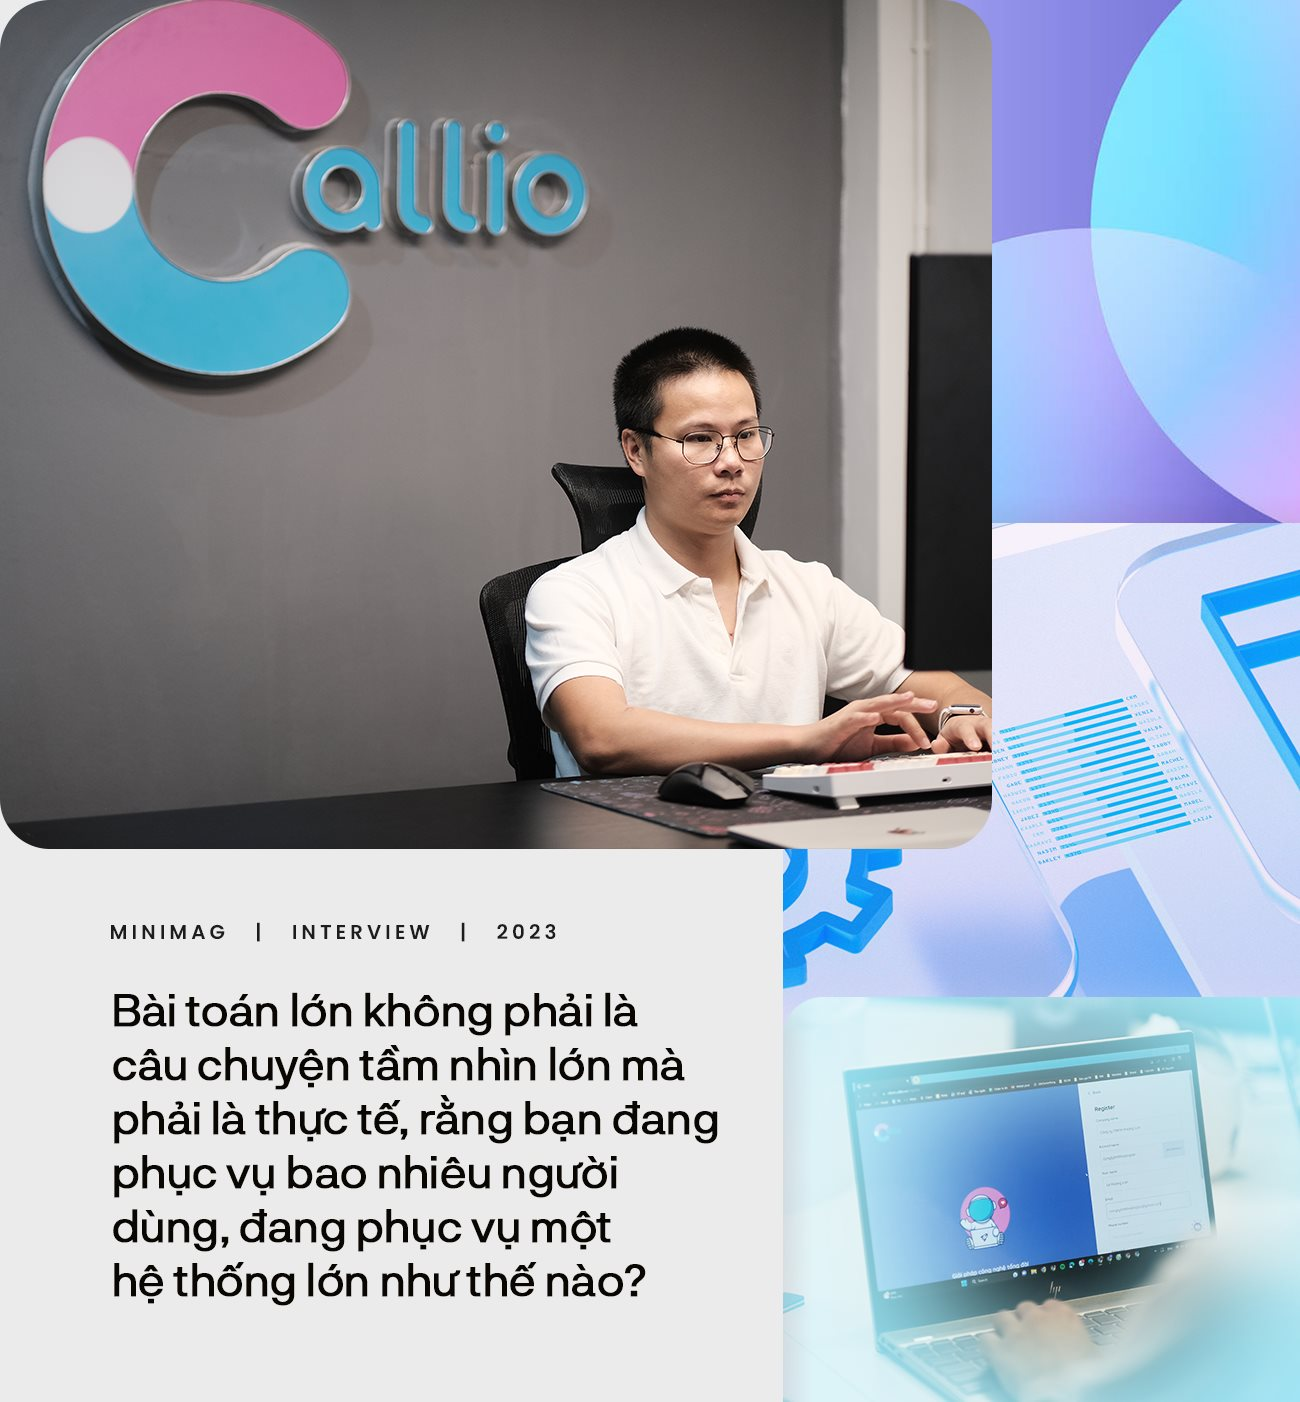 Giang Thiên Phú - “Developer có tâm” đứng sau Callio: Phần mềm doanh thu vài triệu USD mà không ai dùng là thất bại - Ảnh 7.